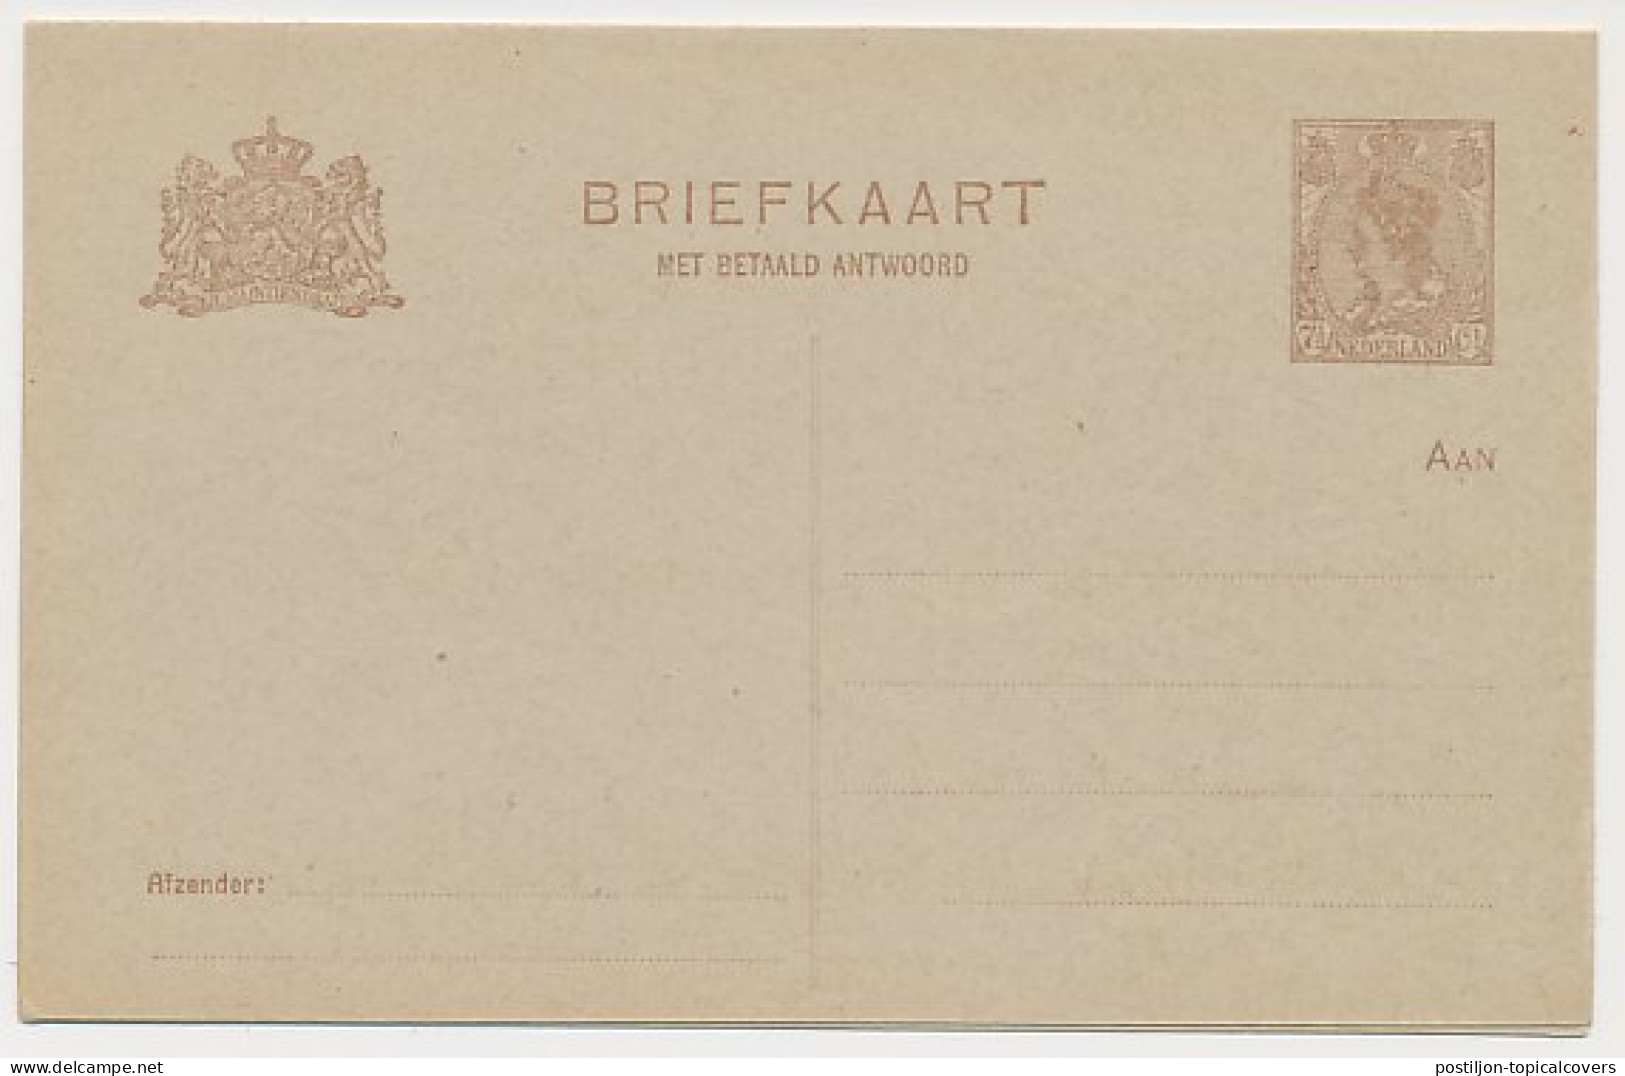 Briefkaart G. 192 - Ganzsachen